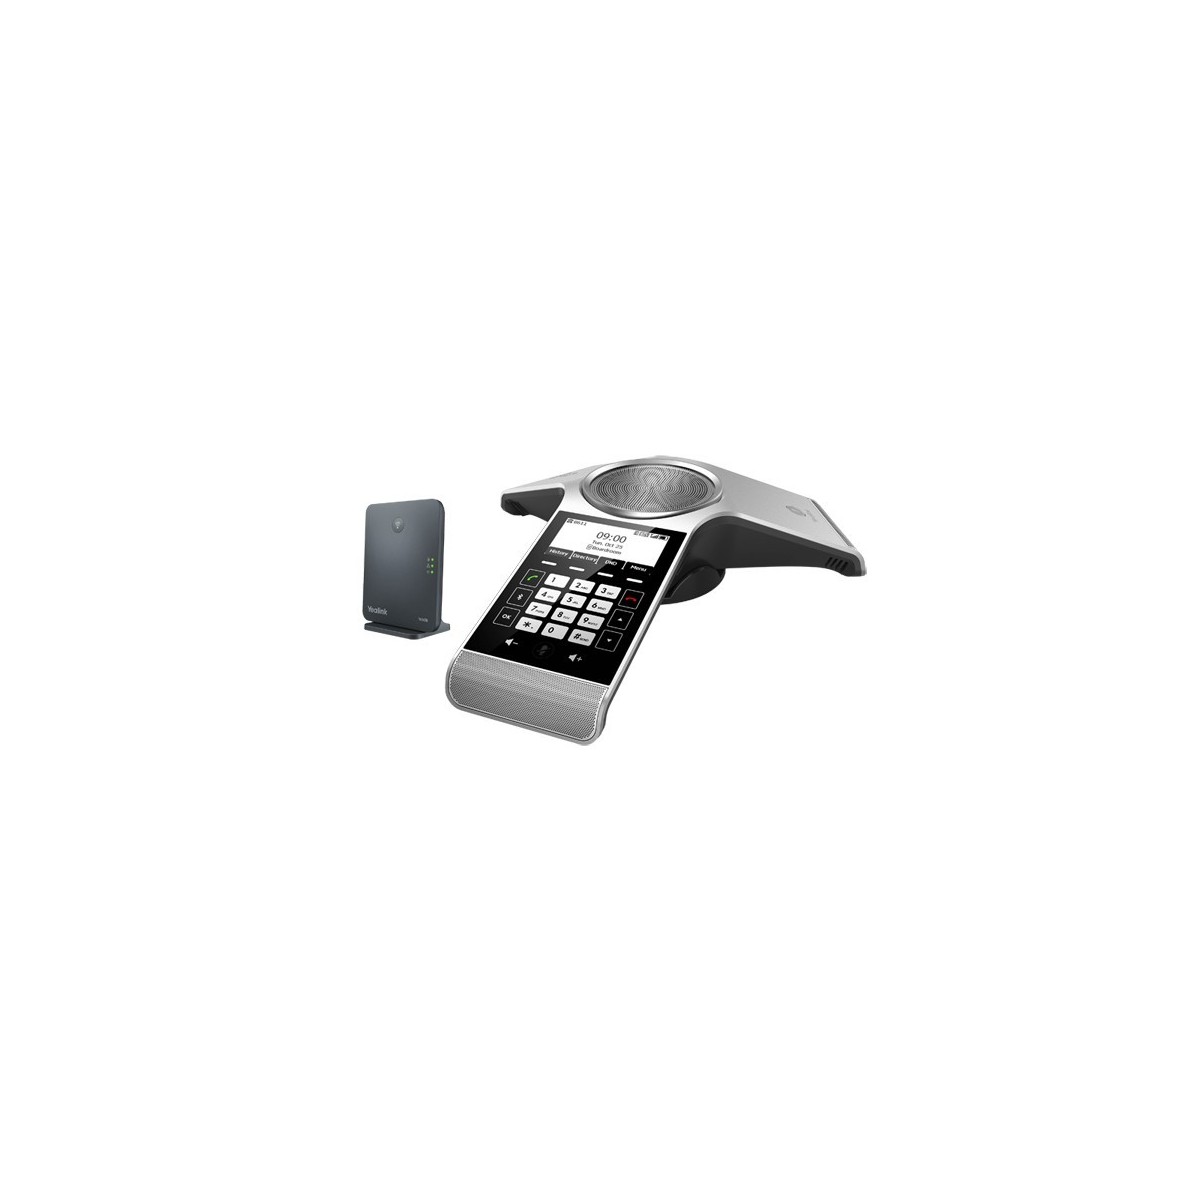 Yealink IP Konferenztelefon CP930W Package inkl. W60B - Basisstation - Voice-Over-IP